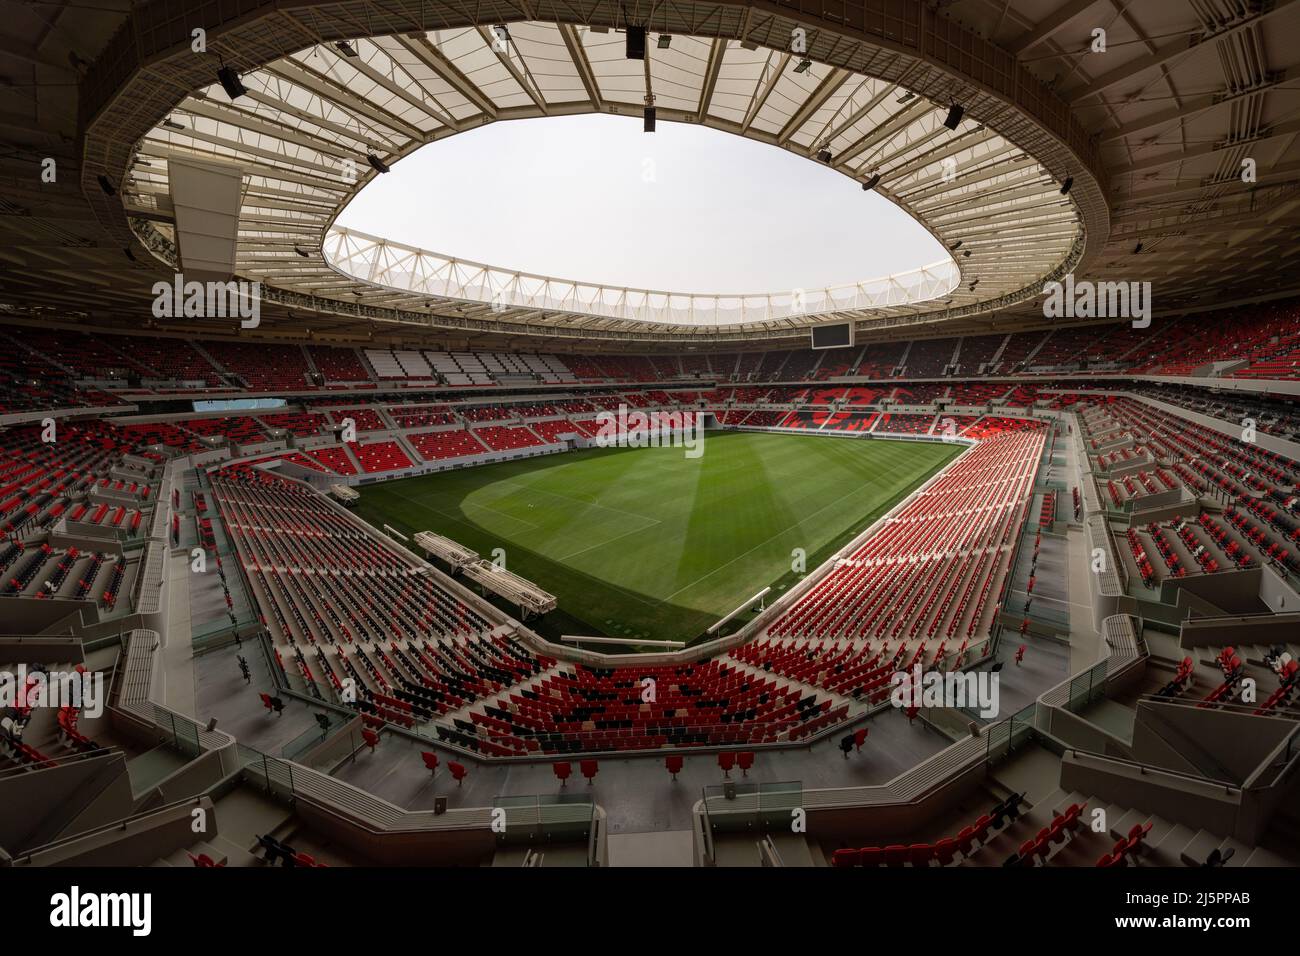 Le stade Ahmad Bin Ali, l'un des 8 sites de la coupe du monde de la FIFA, Qatar 2022, accueillera jusqu'à 40 000 fans lors des matchs jusqu'au quart de finale. Banque D'Images